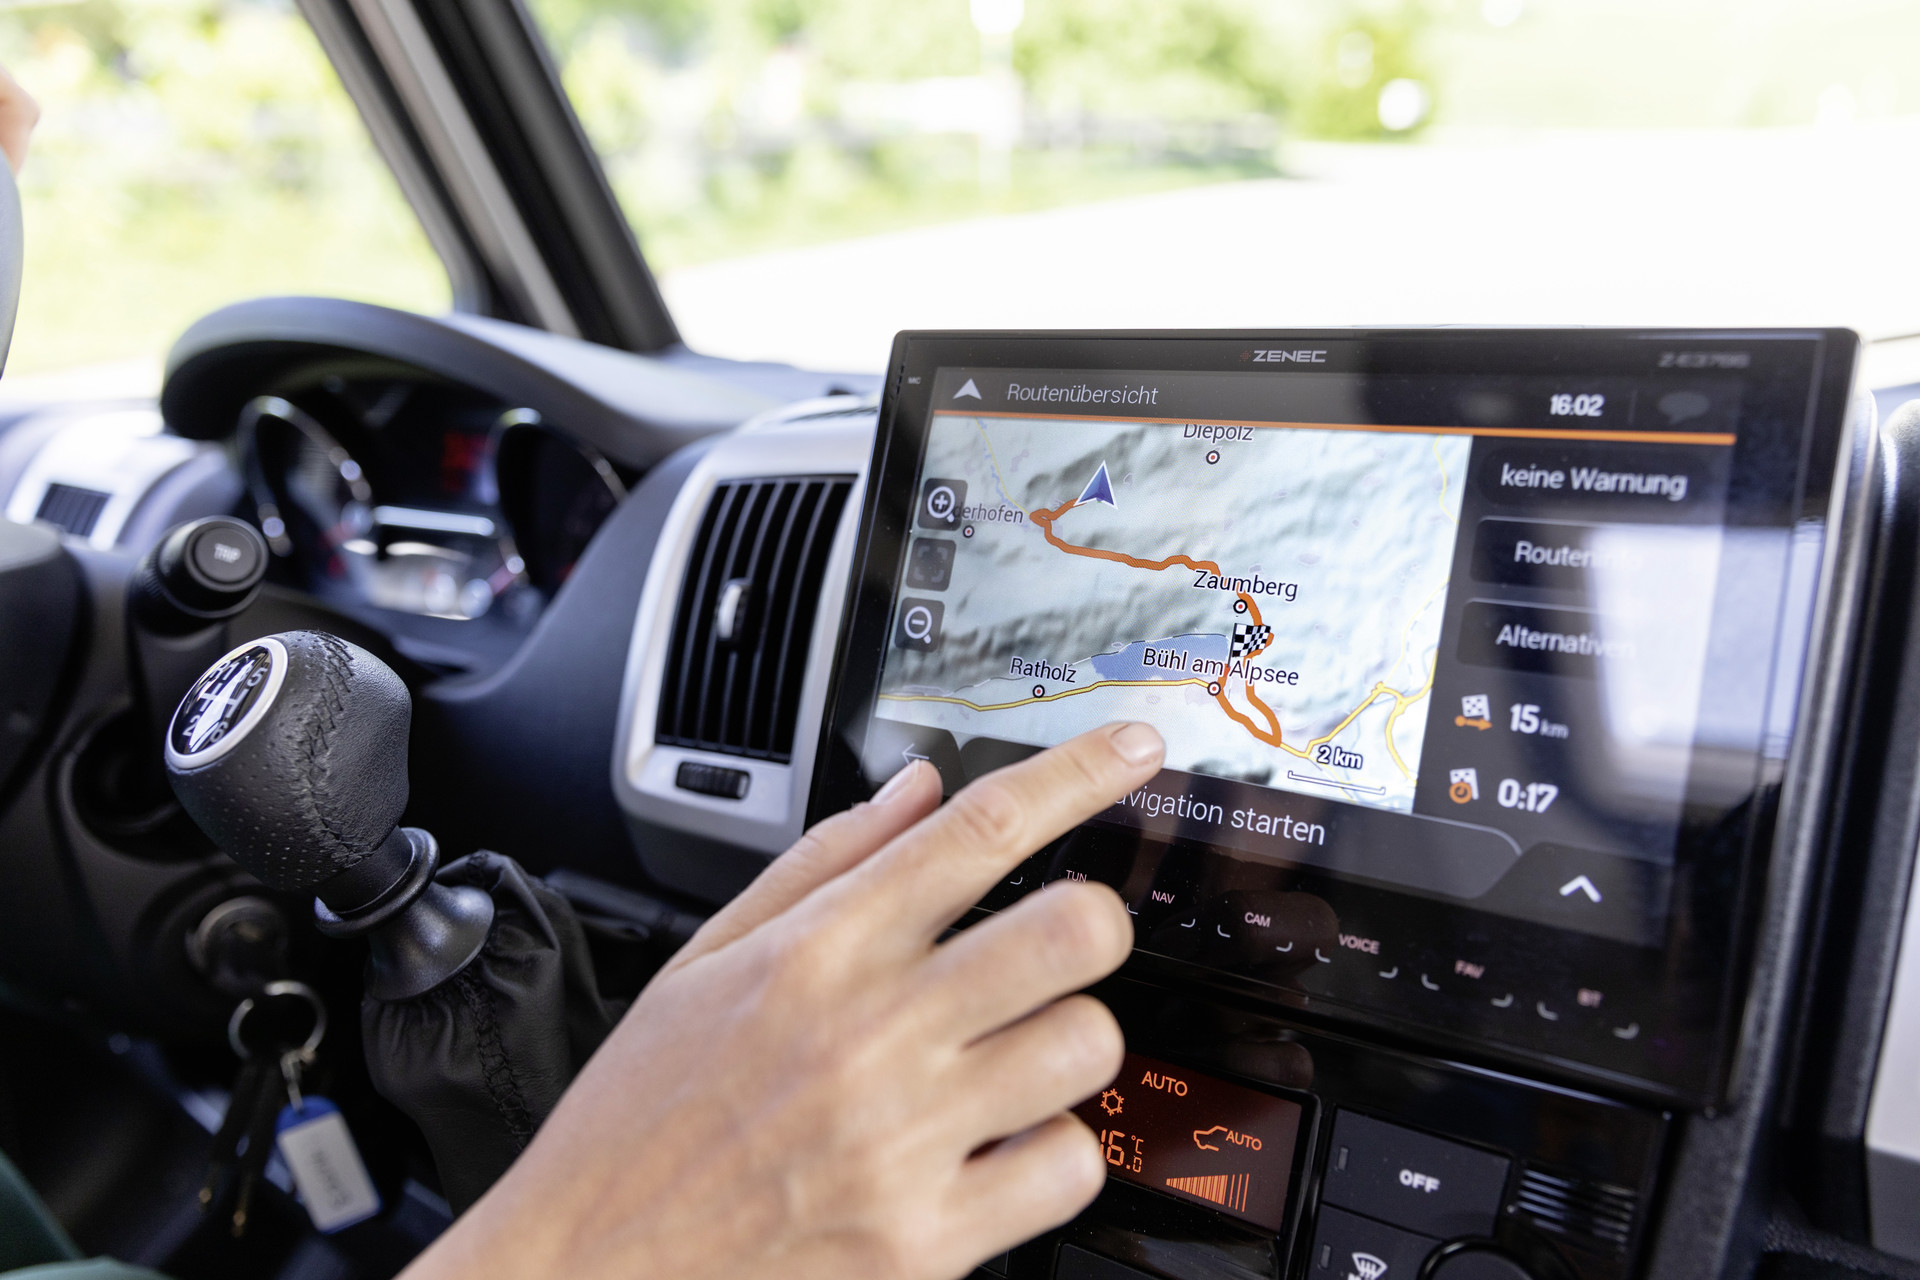 Dethleffs multimediapaket: Navigeringsenhet ZENEC Z-E3766EHG inkl. navigeringsprogram för camper vans och passande backkamera.